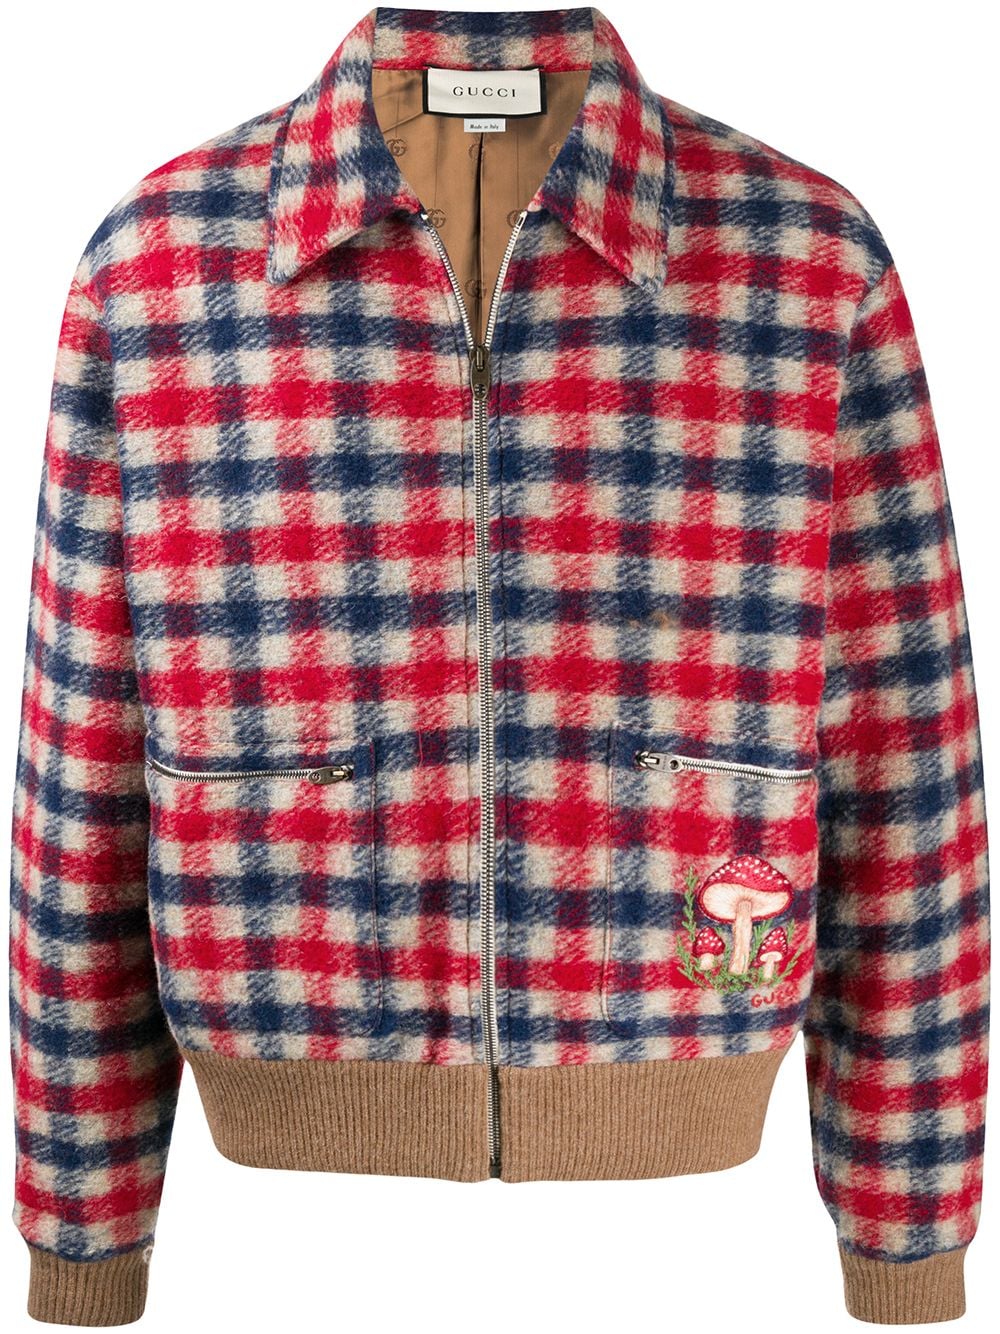 фото Gucci клетчатая куртка с вышивкой